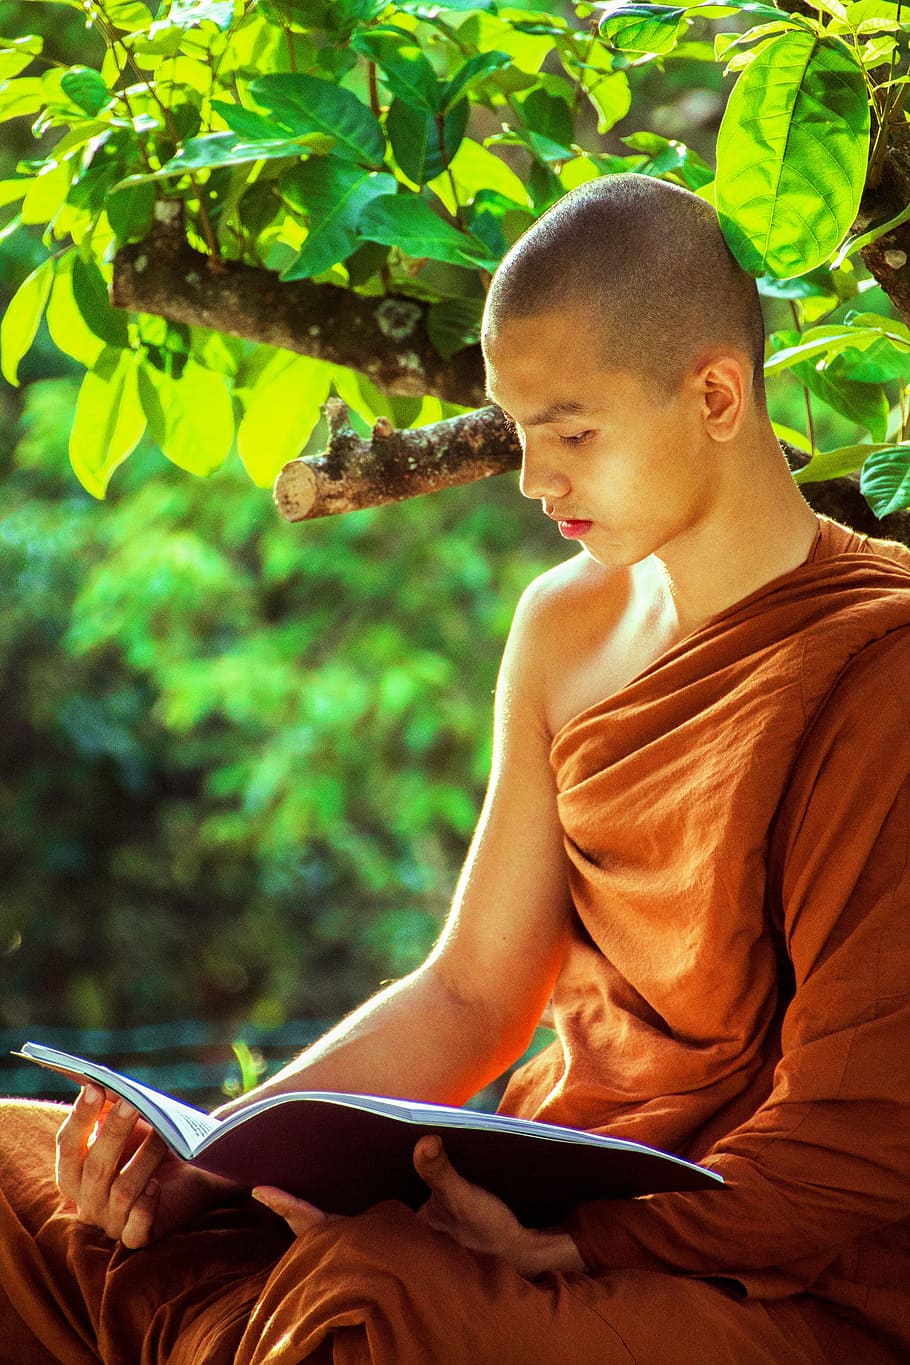 man in brown kasaya reading book under tree at daytime, theravada monk